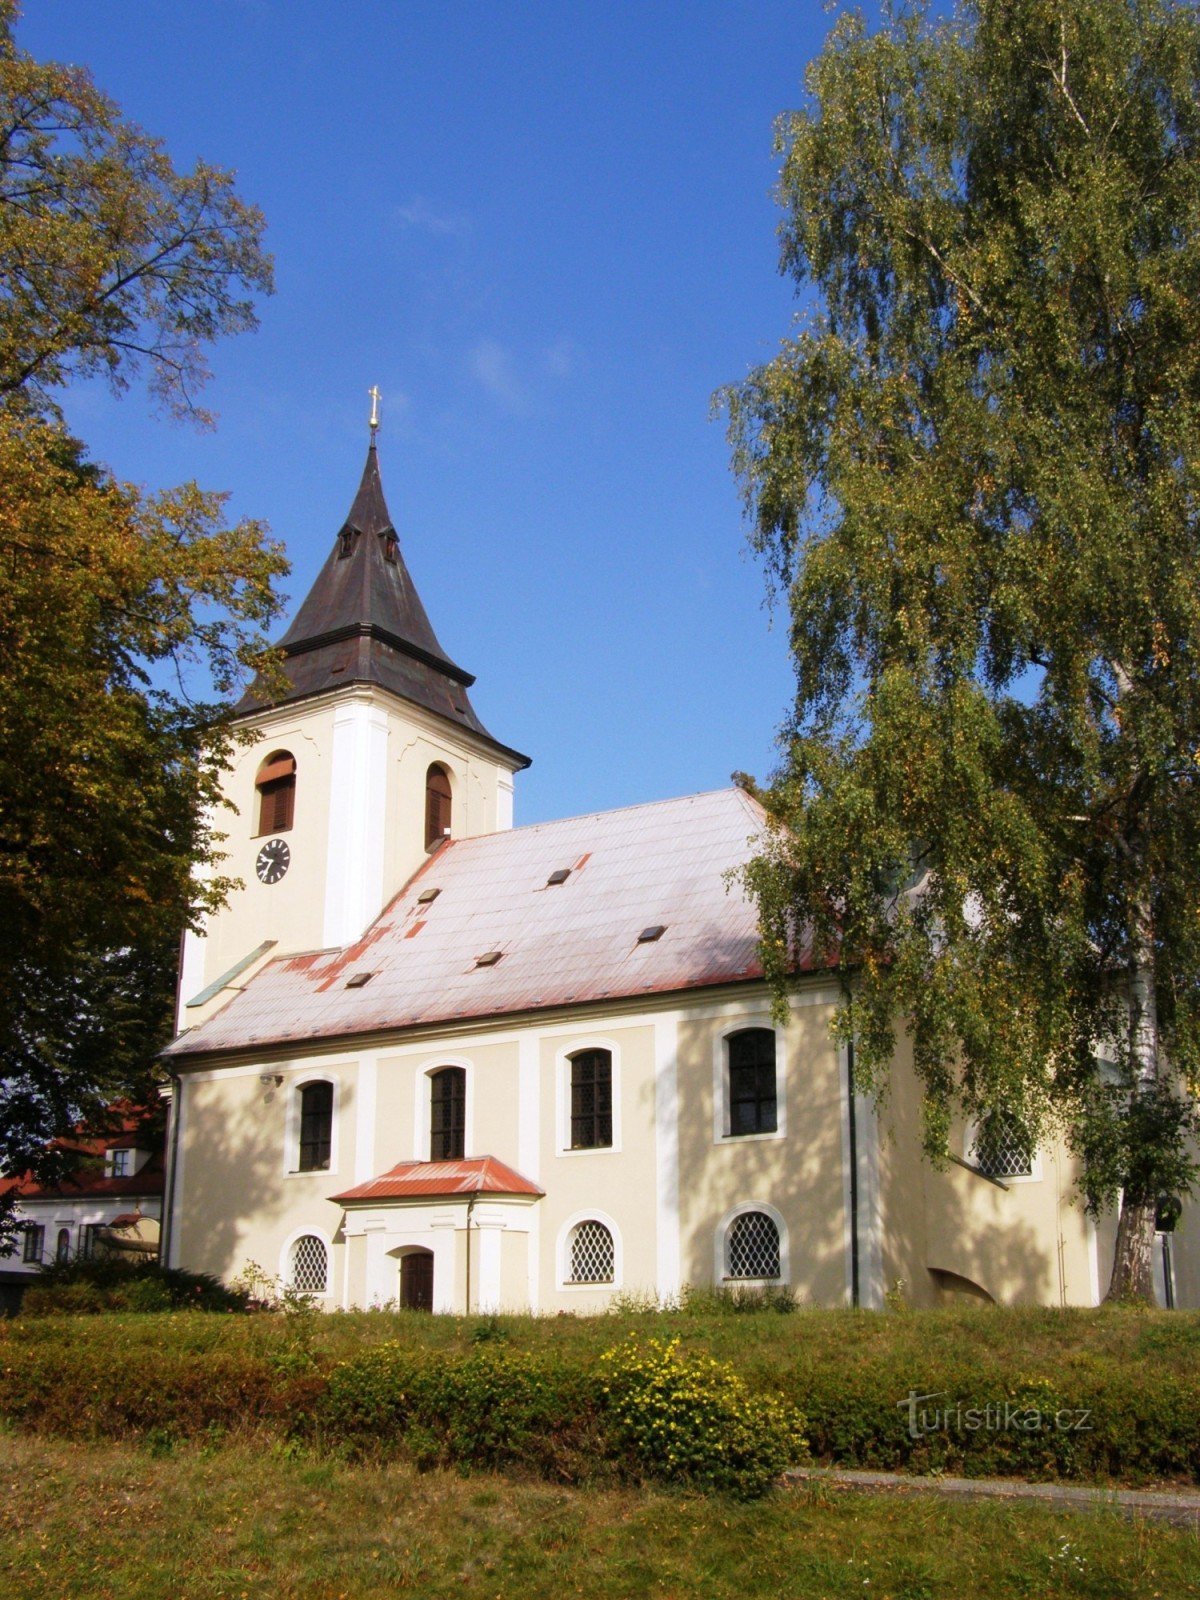 Себранице - церковь св. Николай